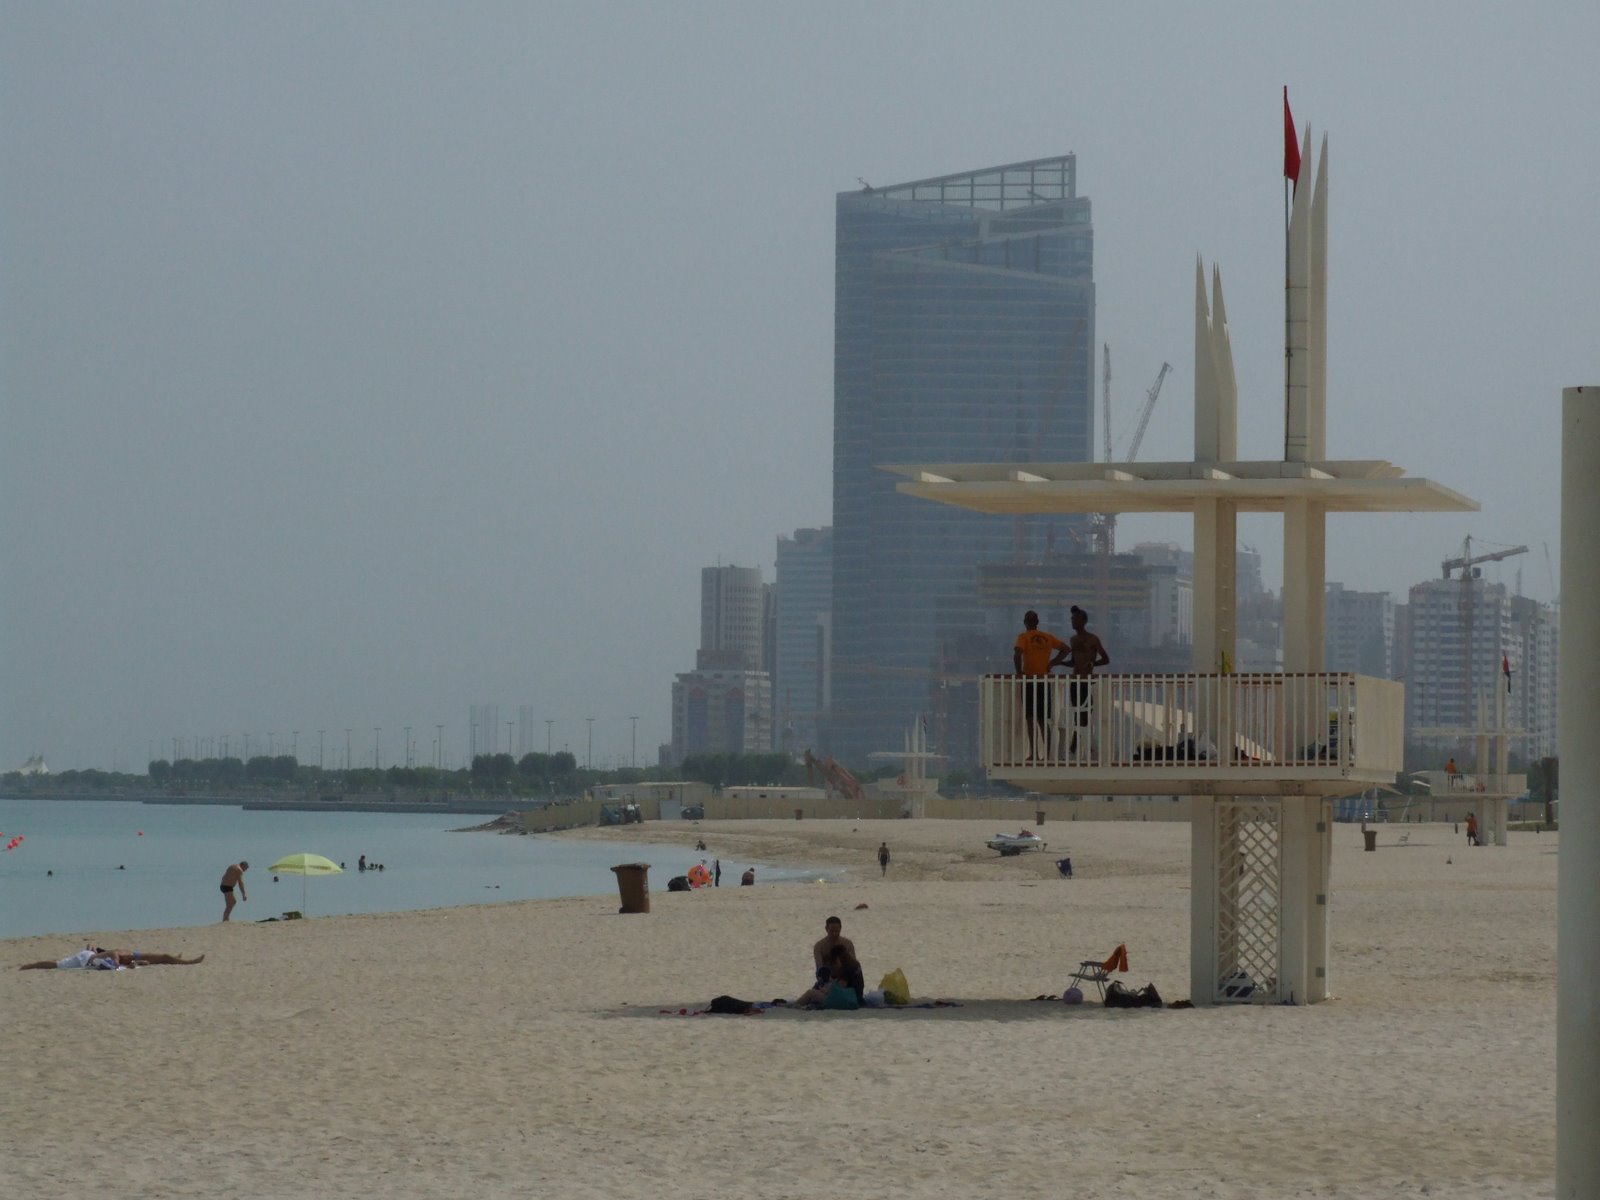 [Abu+Dhabi+Beach+2+DSCF3924.JPG]